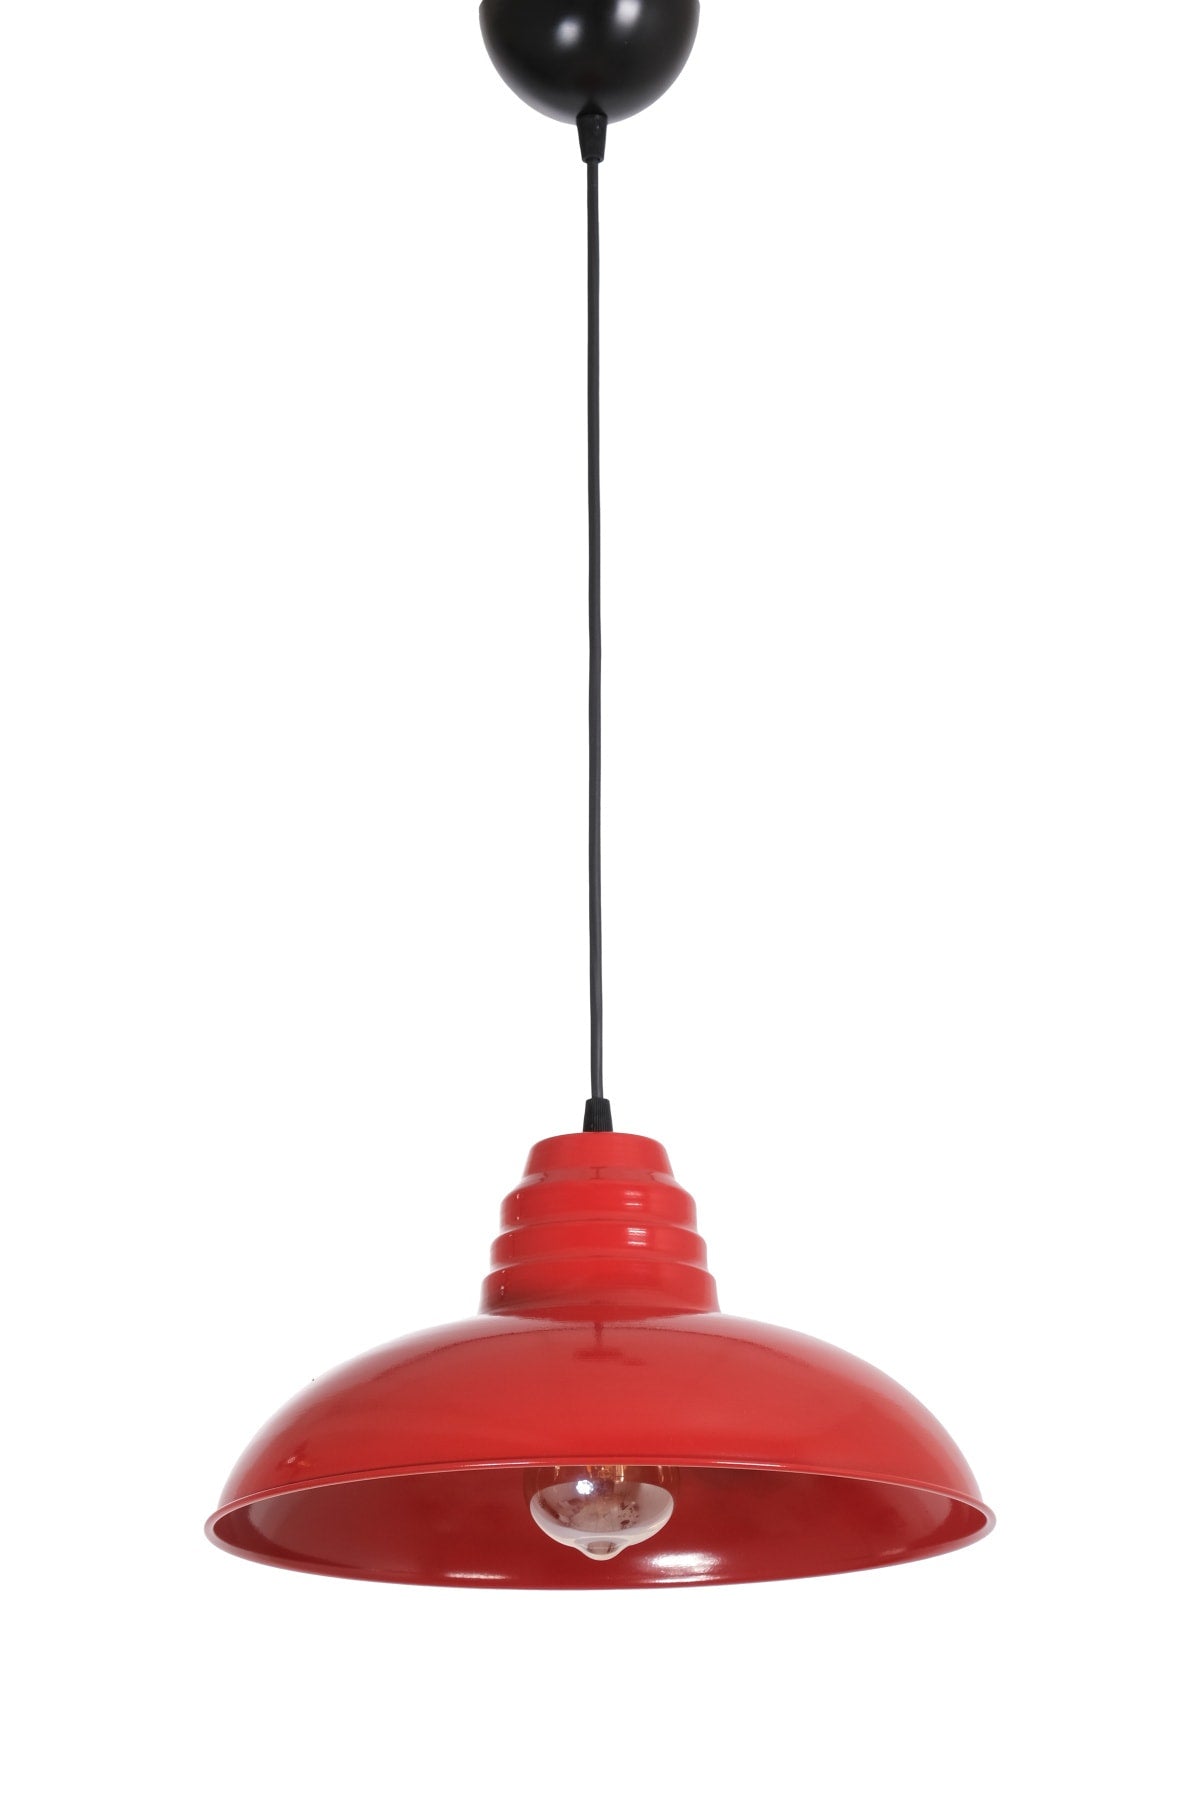 Sydney Modern Design Cafe - Kitchen - Living Room - Hall Red Color Single Chandelier